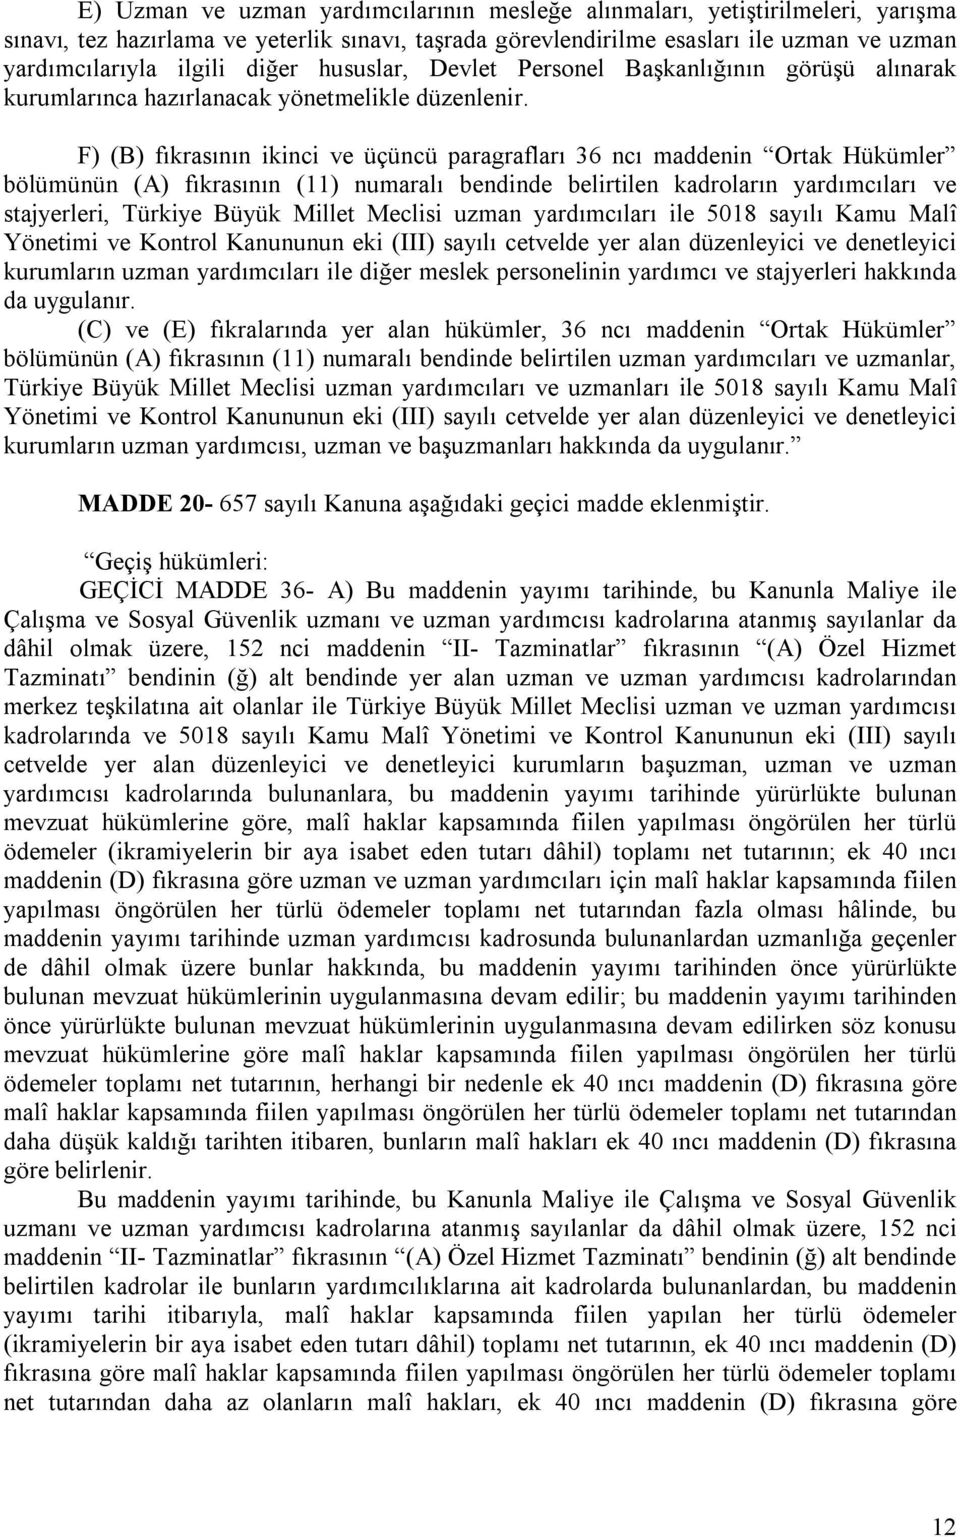 F) (B) fıkrasının ikinci ve üçüncü paragrafları 36 ncı maddenin Ortak Hükümler bölümünün (A) fıkrasının (11) numaralı bendinde belirtilen kadroların yardımcıları ve stajyerleri, Türkiye Büyük Millet